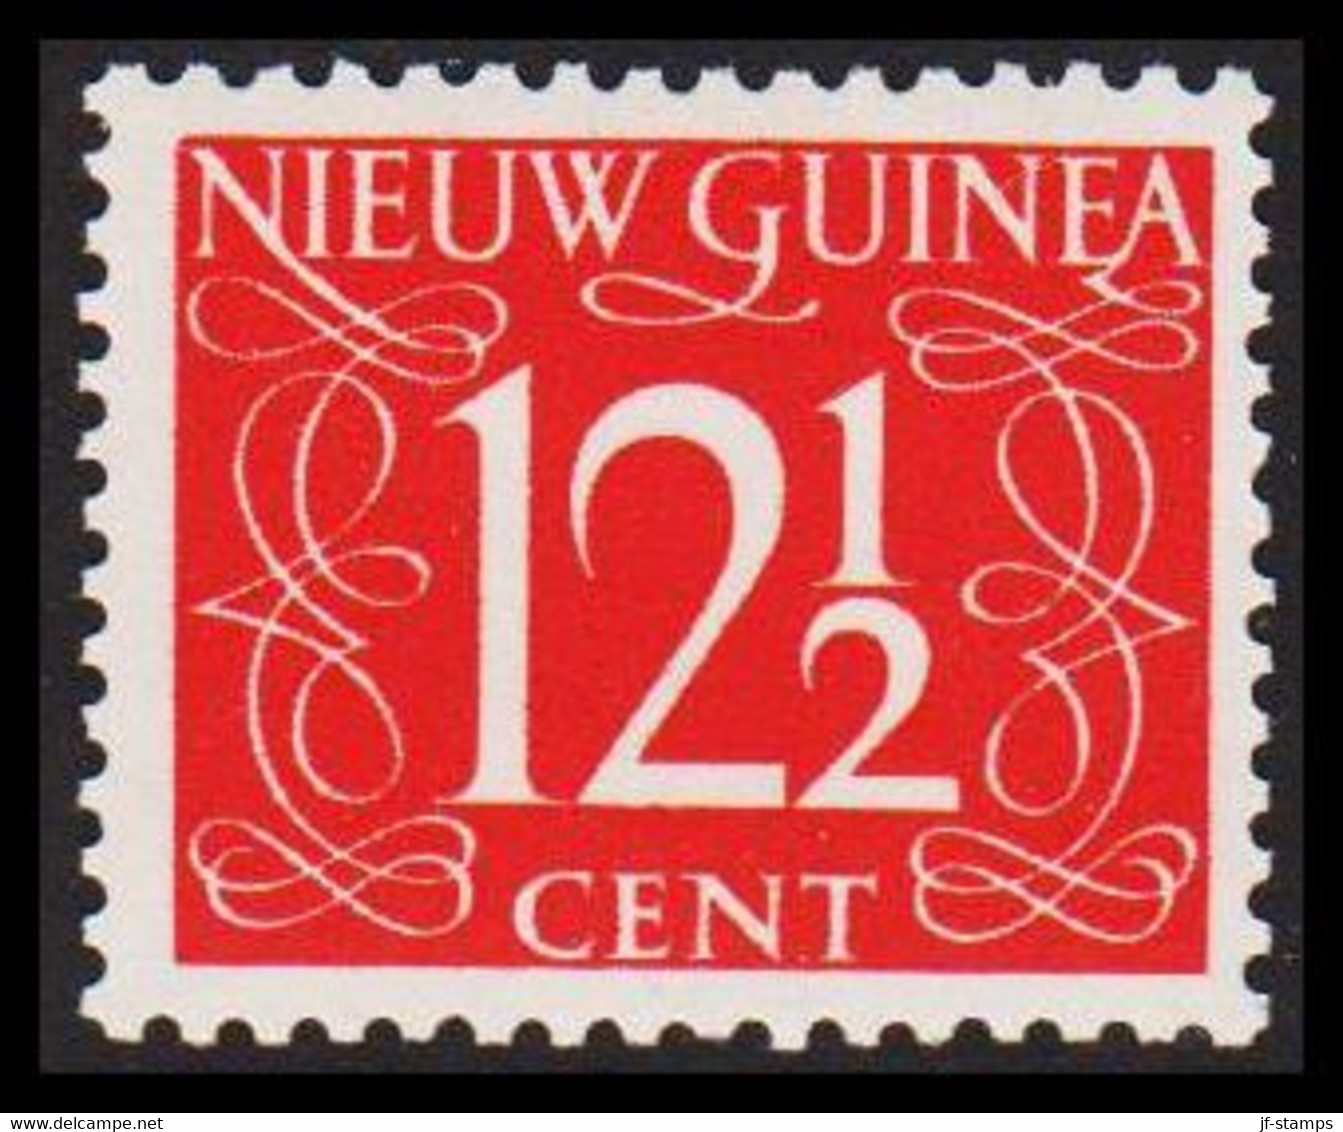 1950. NIEUW GUINEA. Nummerals- Type 12½ CENT Hinged.  - JF529322 - Niederländisch-Neuguinea